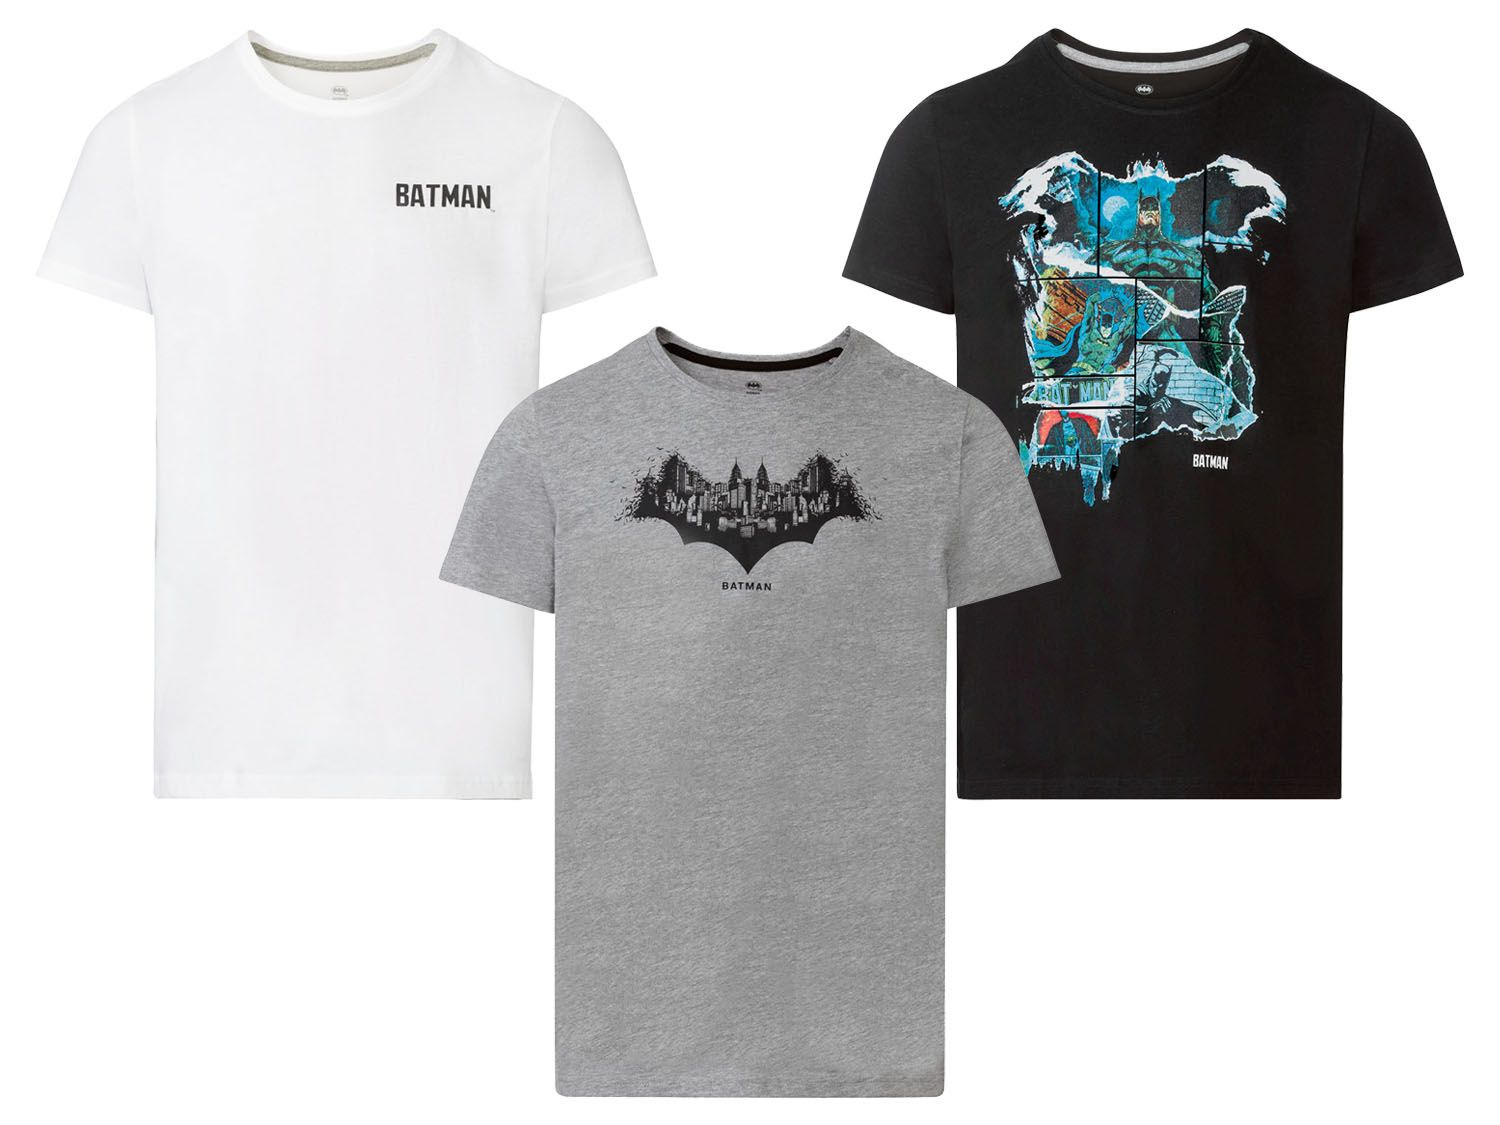 T-shirt męski kolekcji Batman, 1 sztuka | LIDL.PL